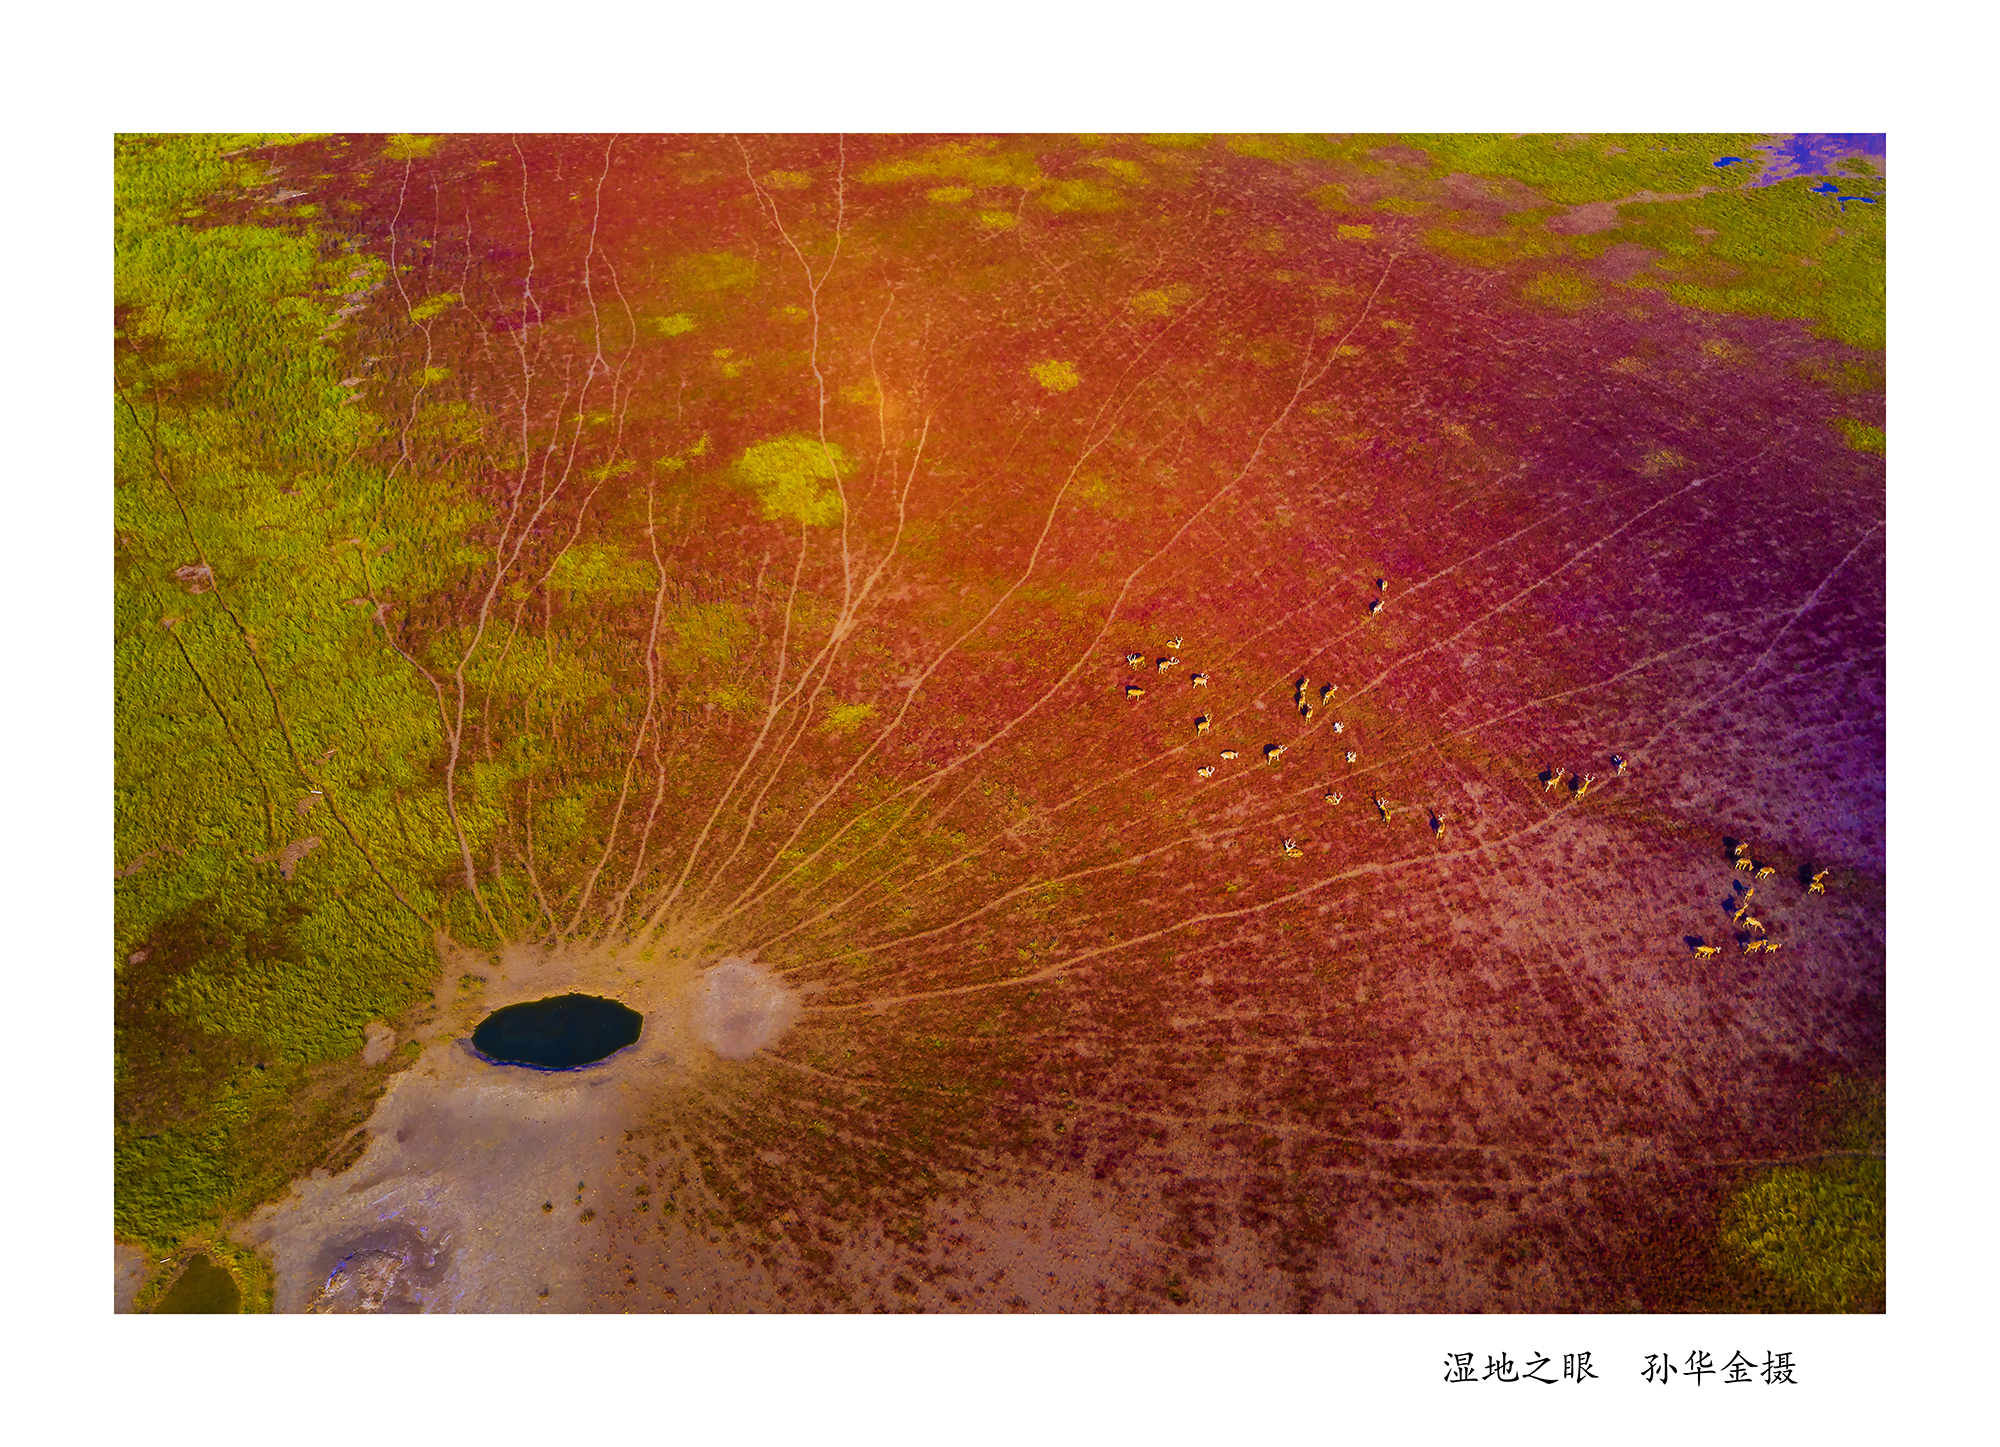 “湿地家园”——孙华金生态摄影精品展开幕